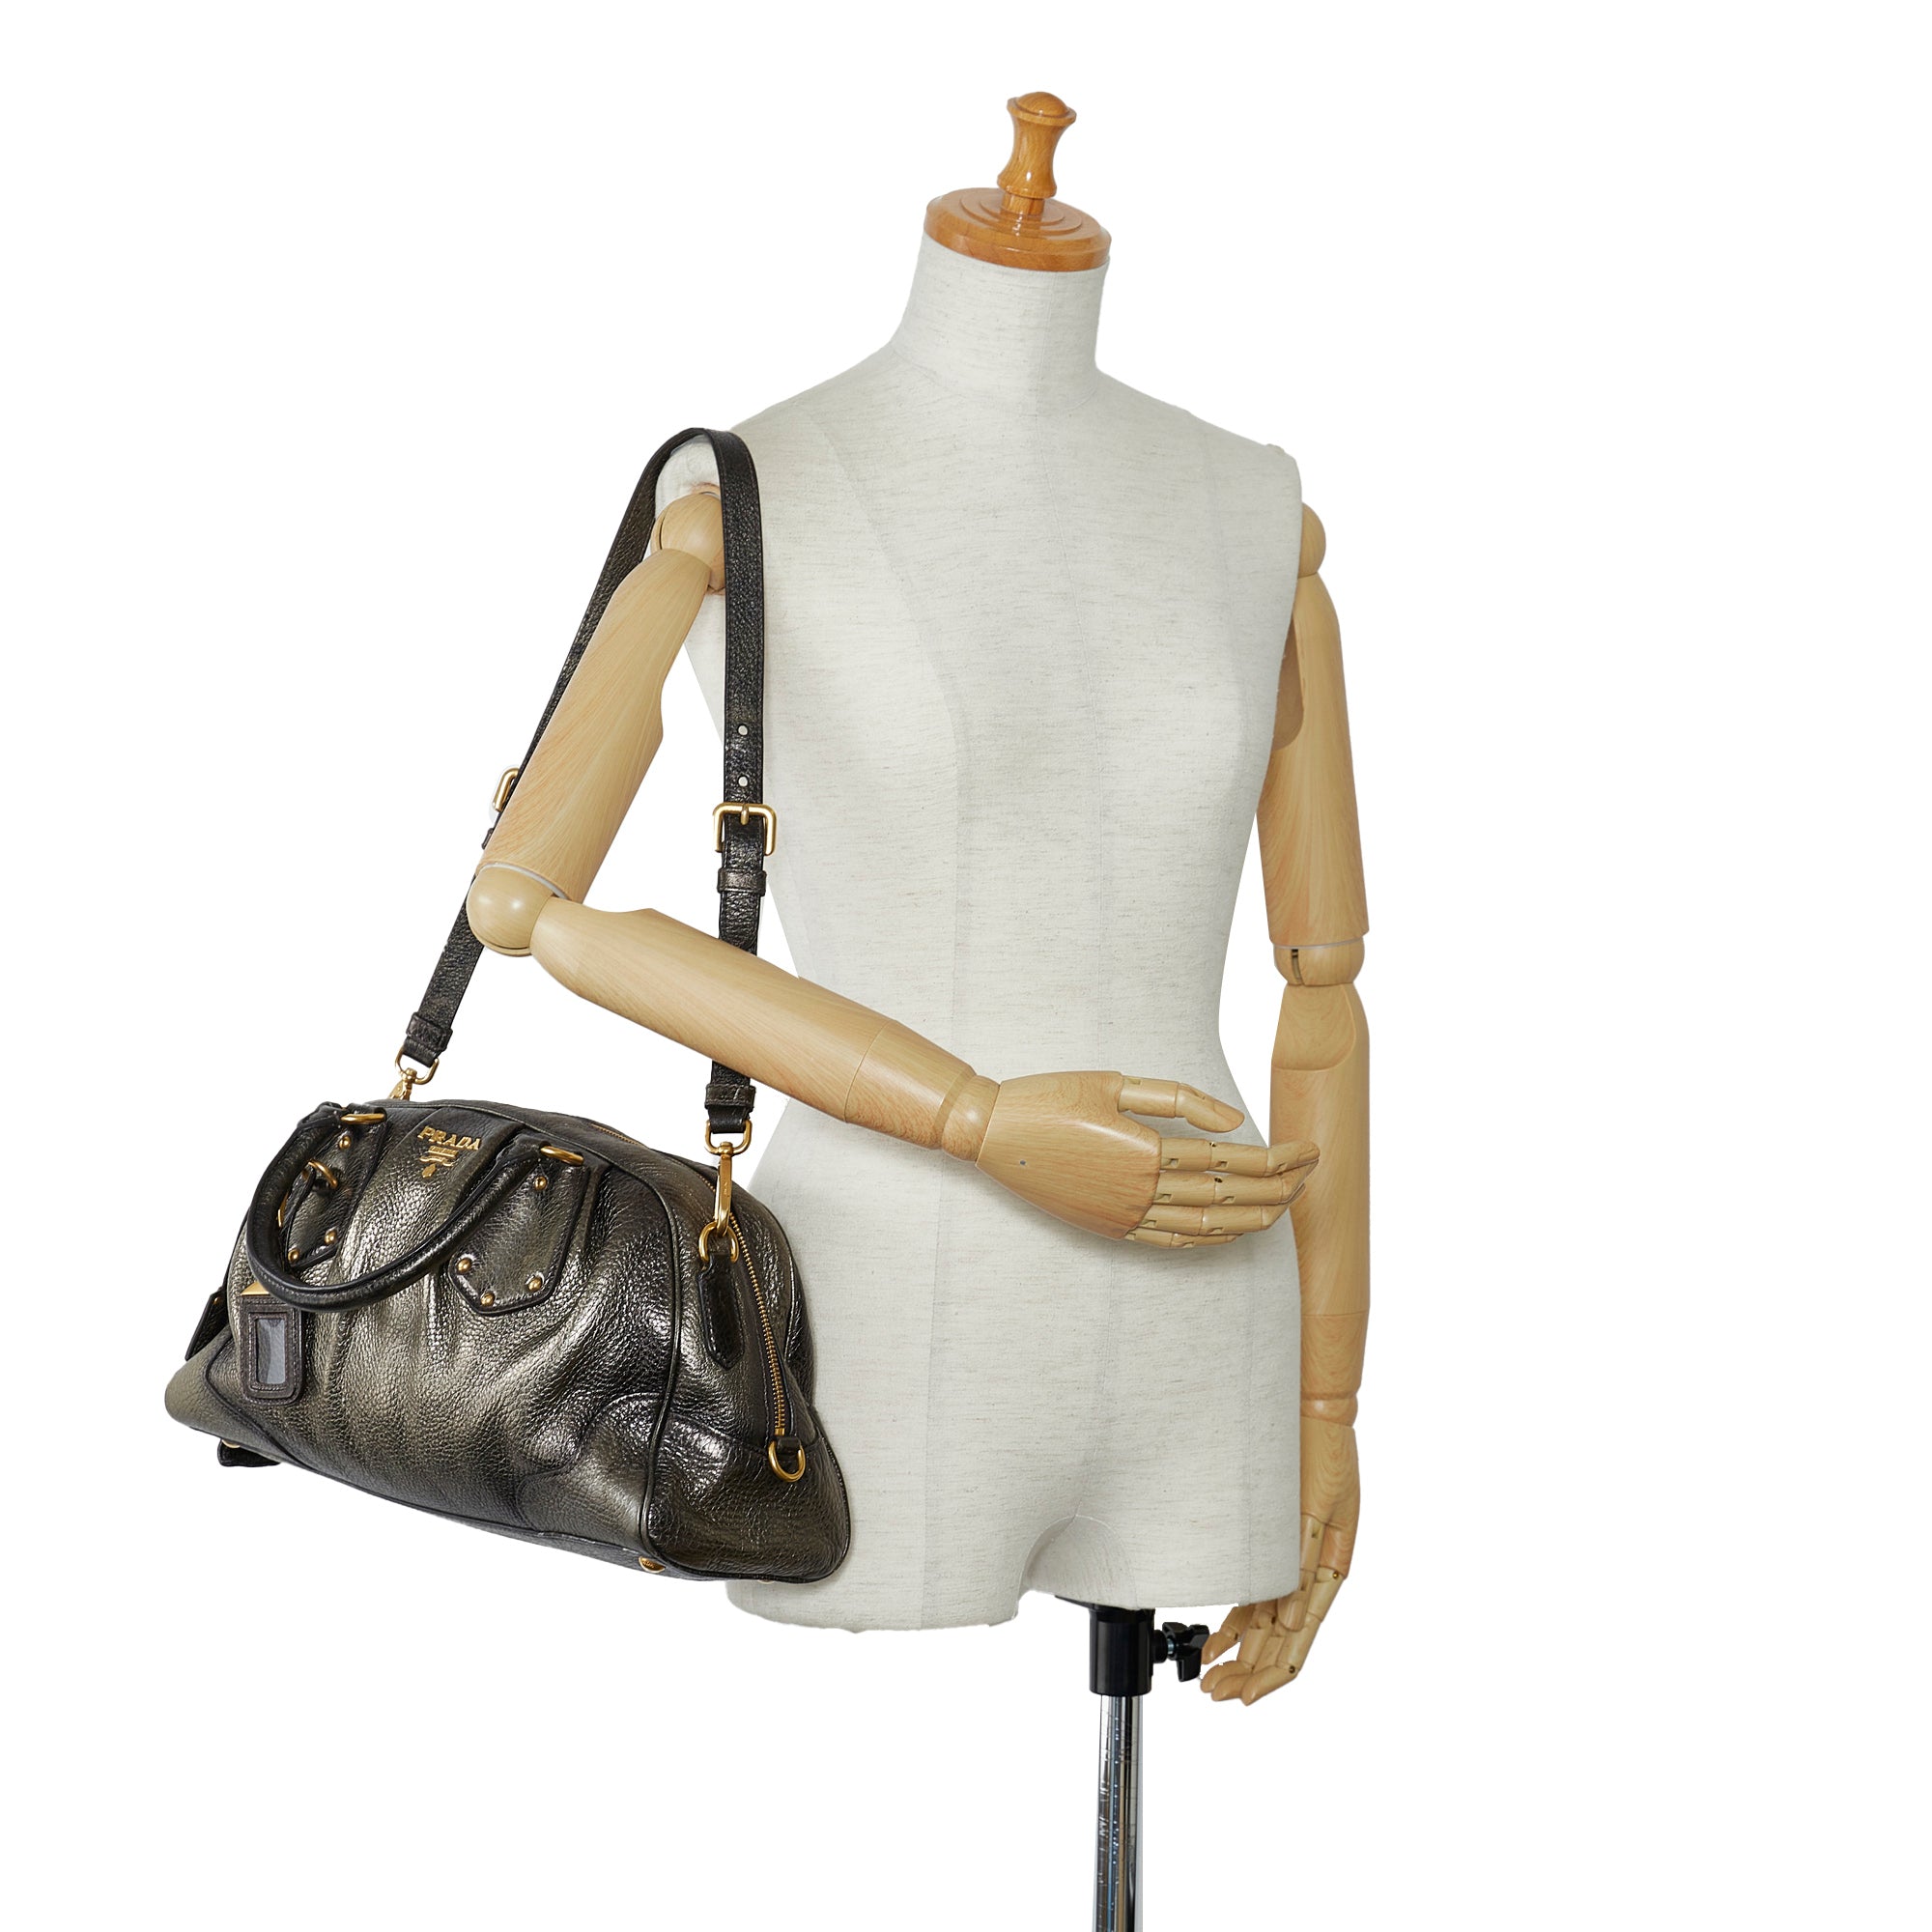 Prada Cervo Antik Bag - Brown Shoulder Bags, Handbags - PRA46337